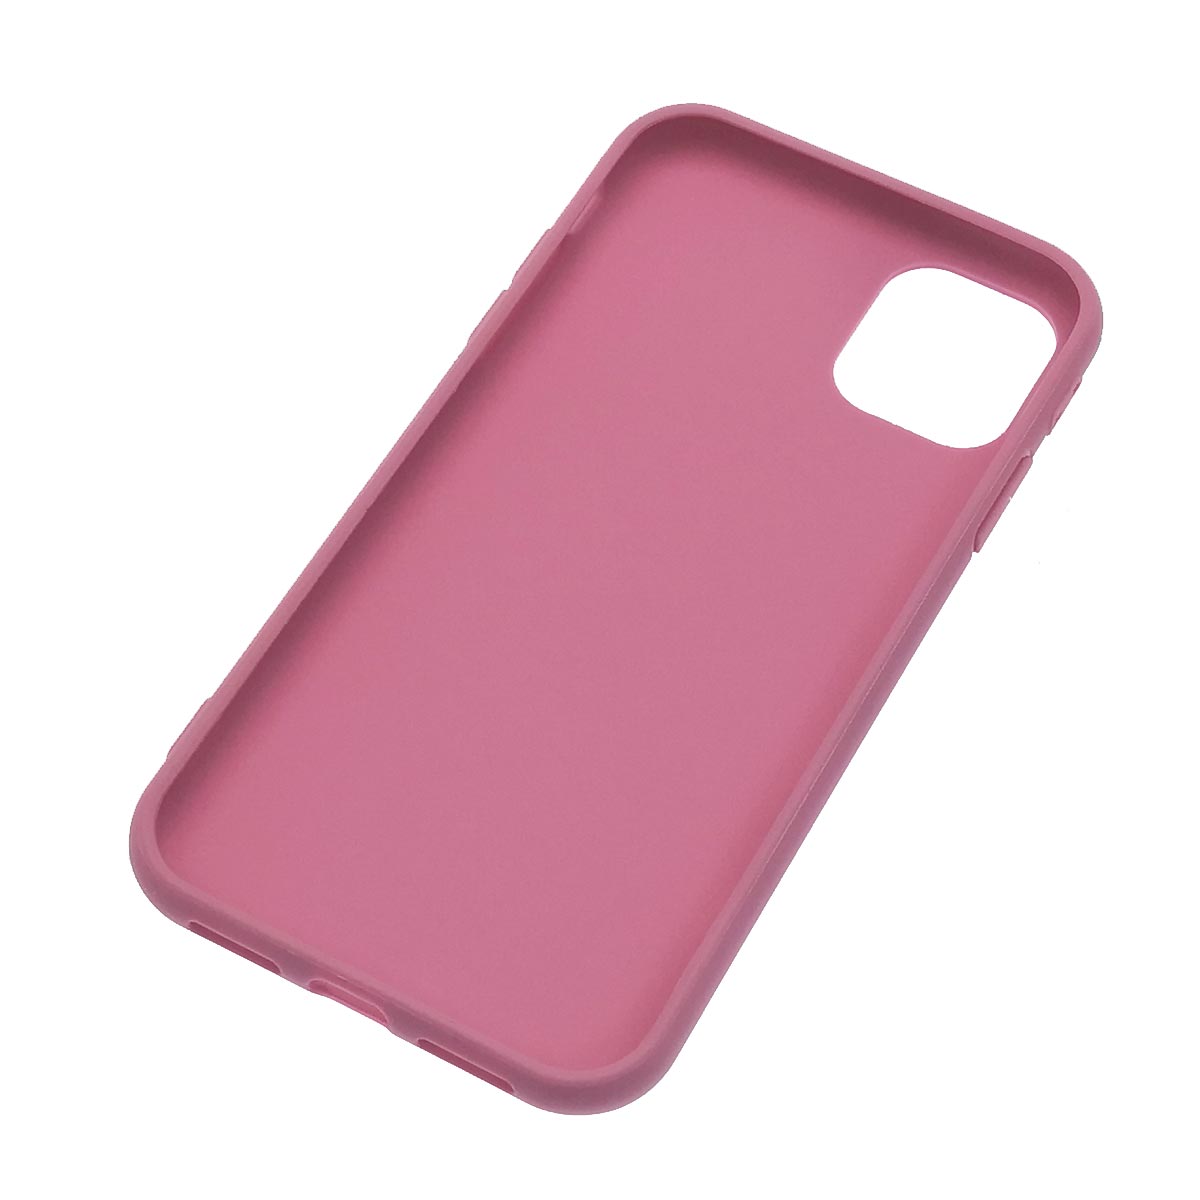 Чехол накладка для APPLE iPhone 11, силикон, матовый, цвет светло малиновый